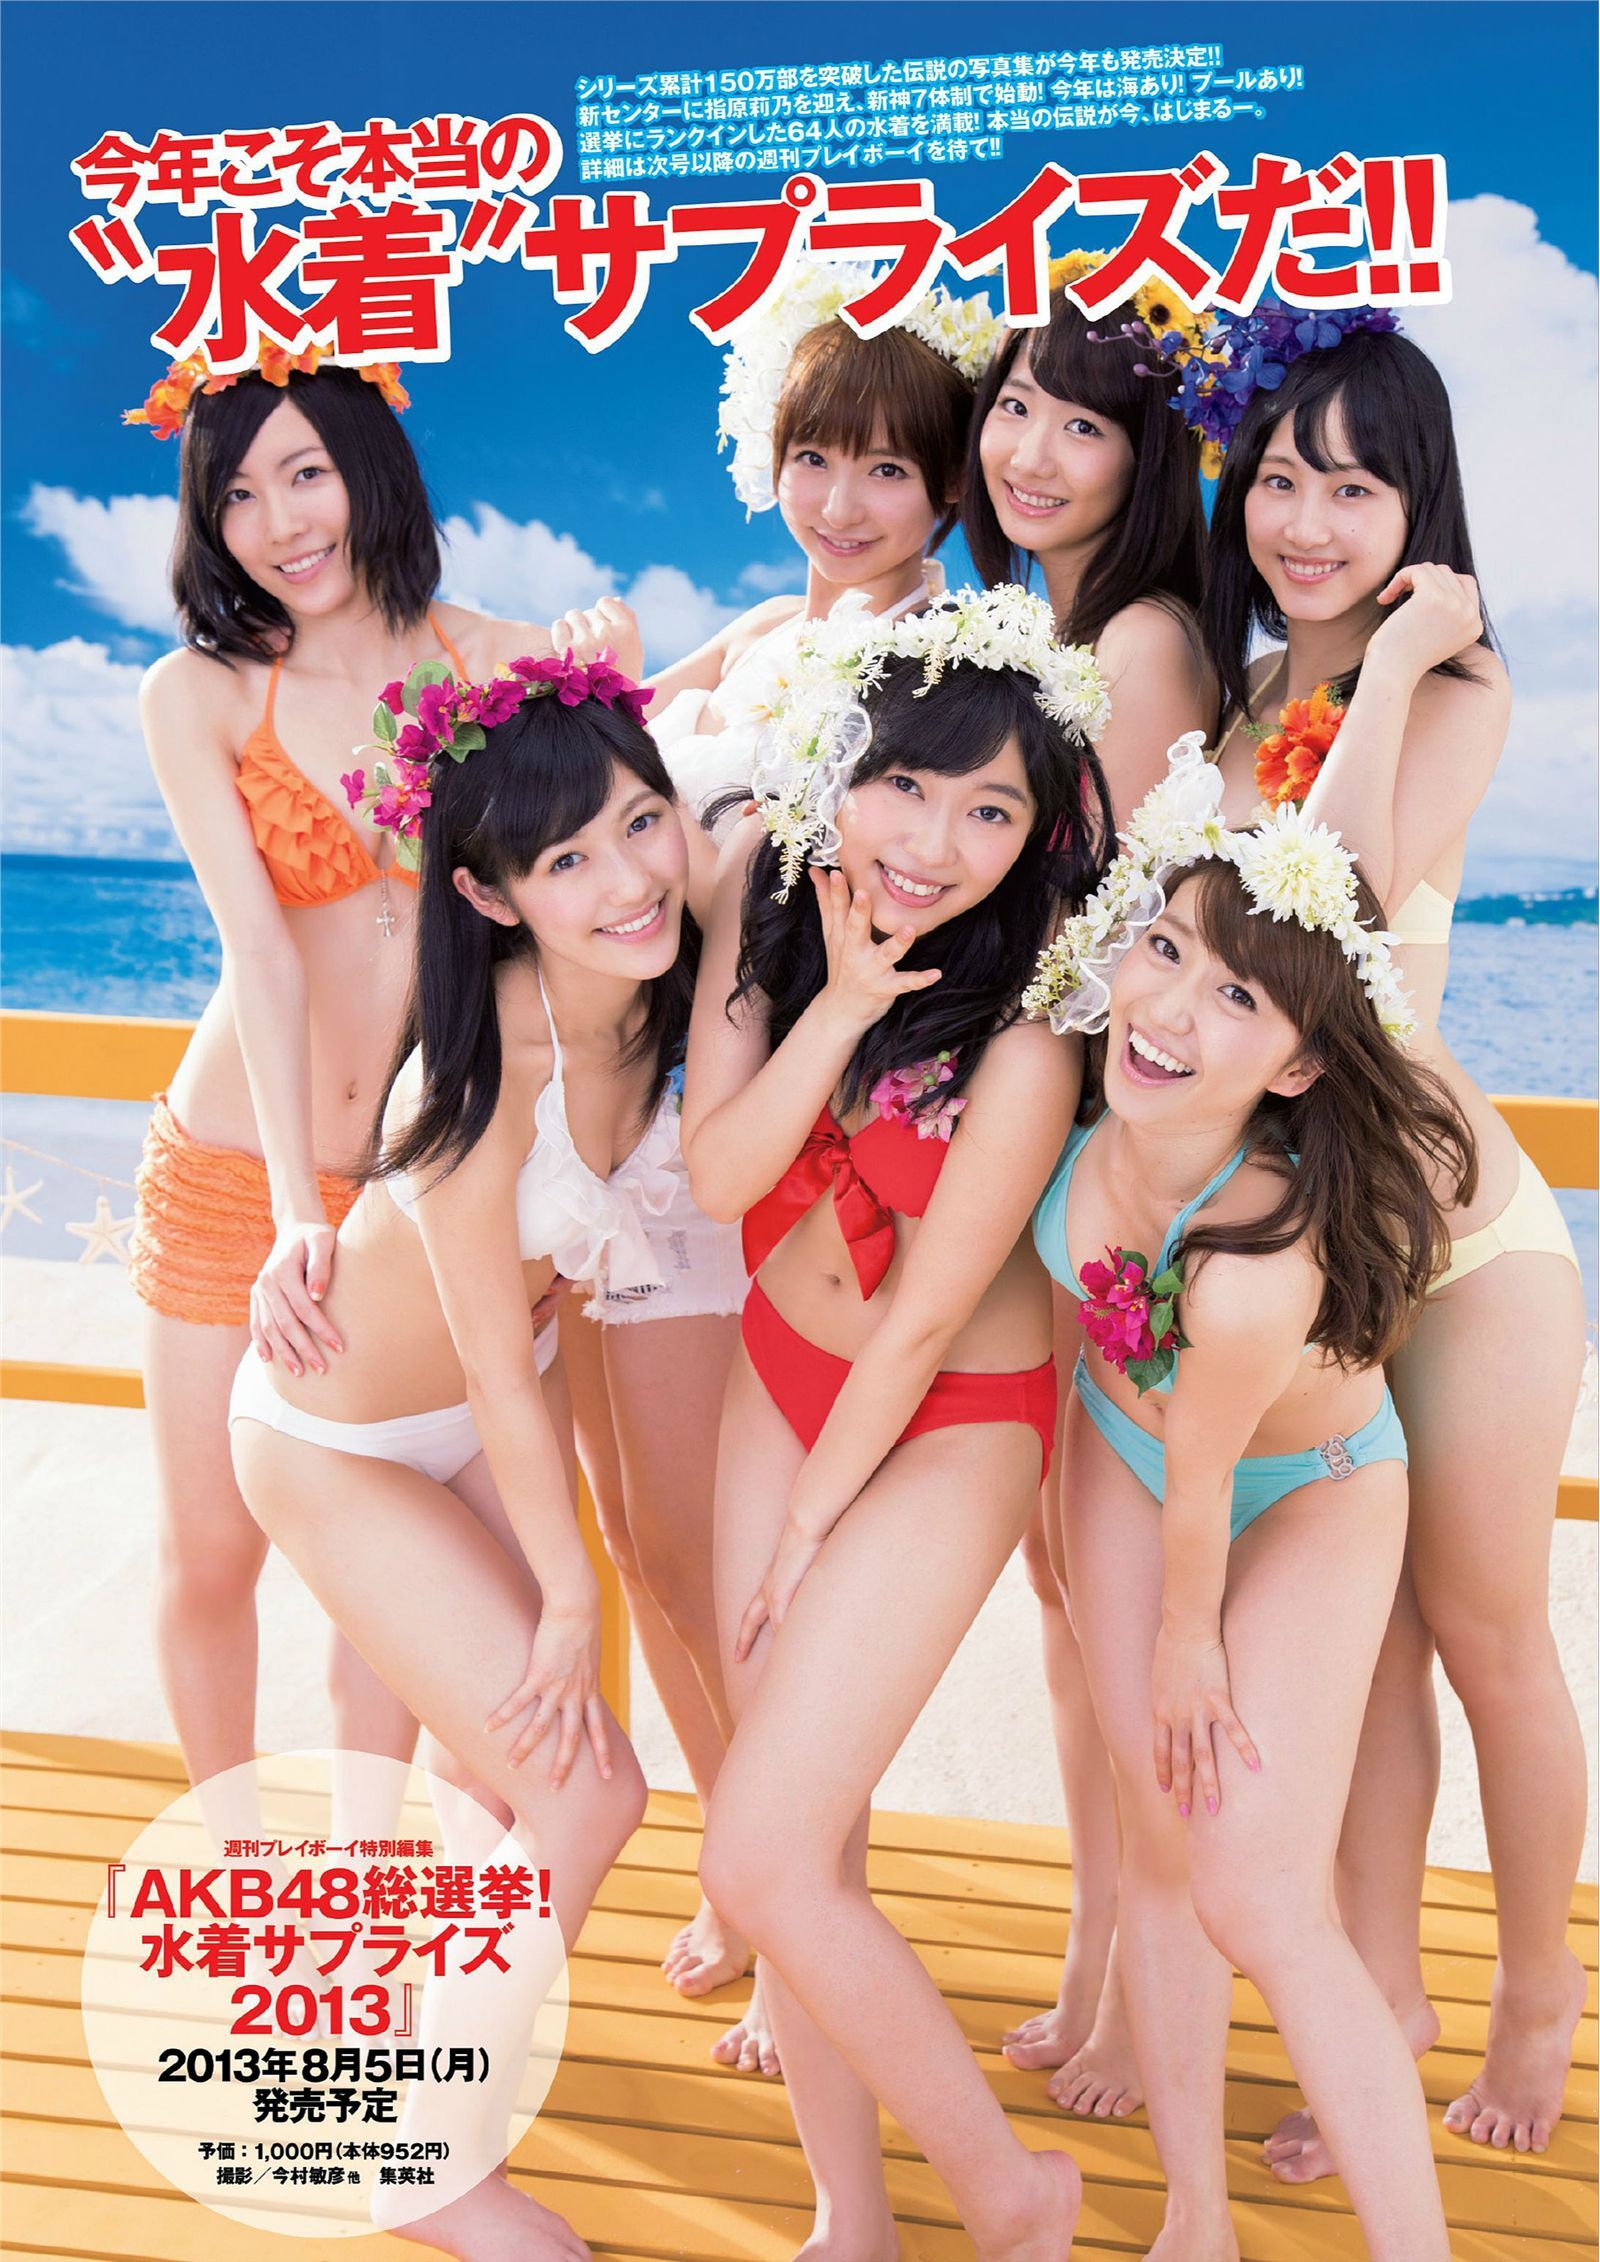 [Weekly Playboy] 2013 No.28 AKB48